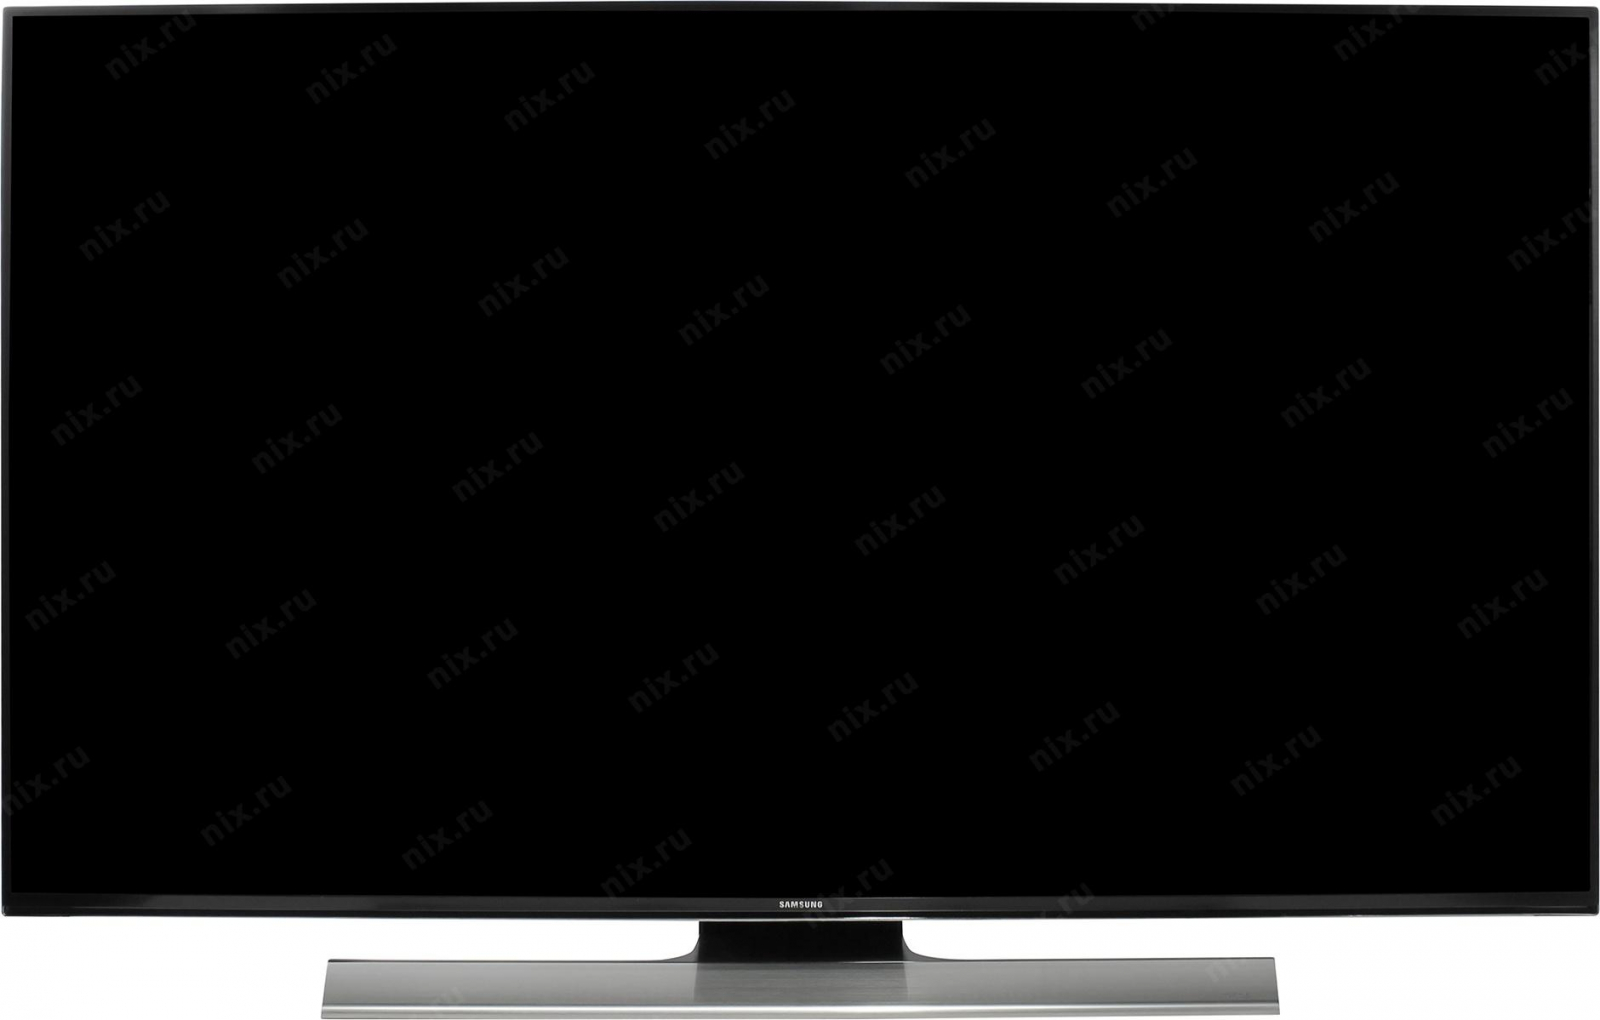 led телевизор samsung ue48hu8500t, купить в Красноярске led телевизор samsung ue48hu8500t,  купить в Красноярске дешево led телевизор samsung ue48hu8500t, купить в Красноярске минимальной цене led телевизор samsung ue48hu8500t